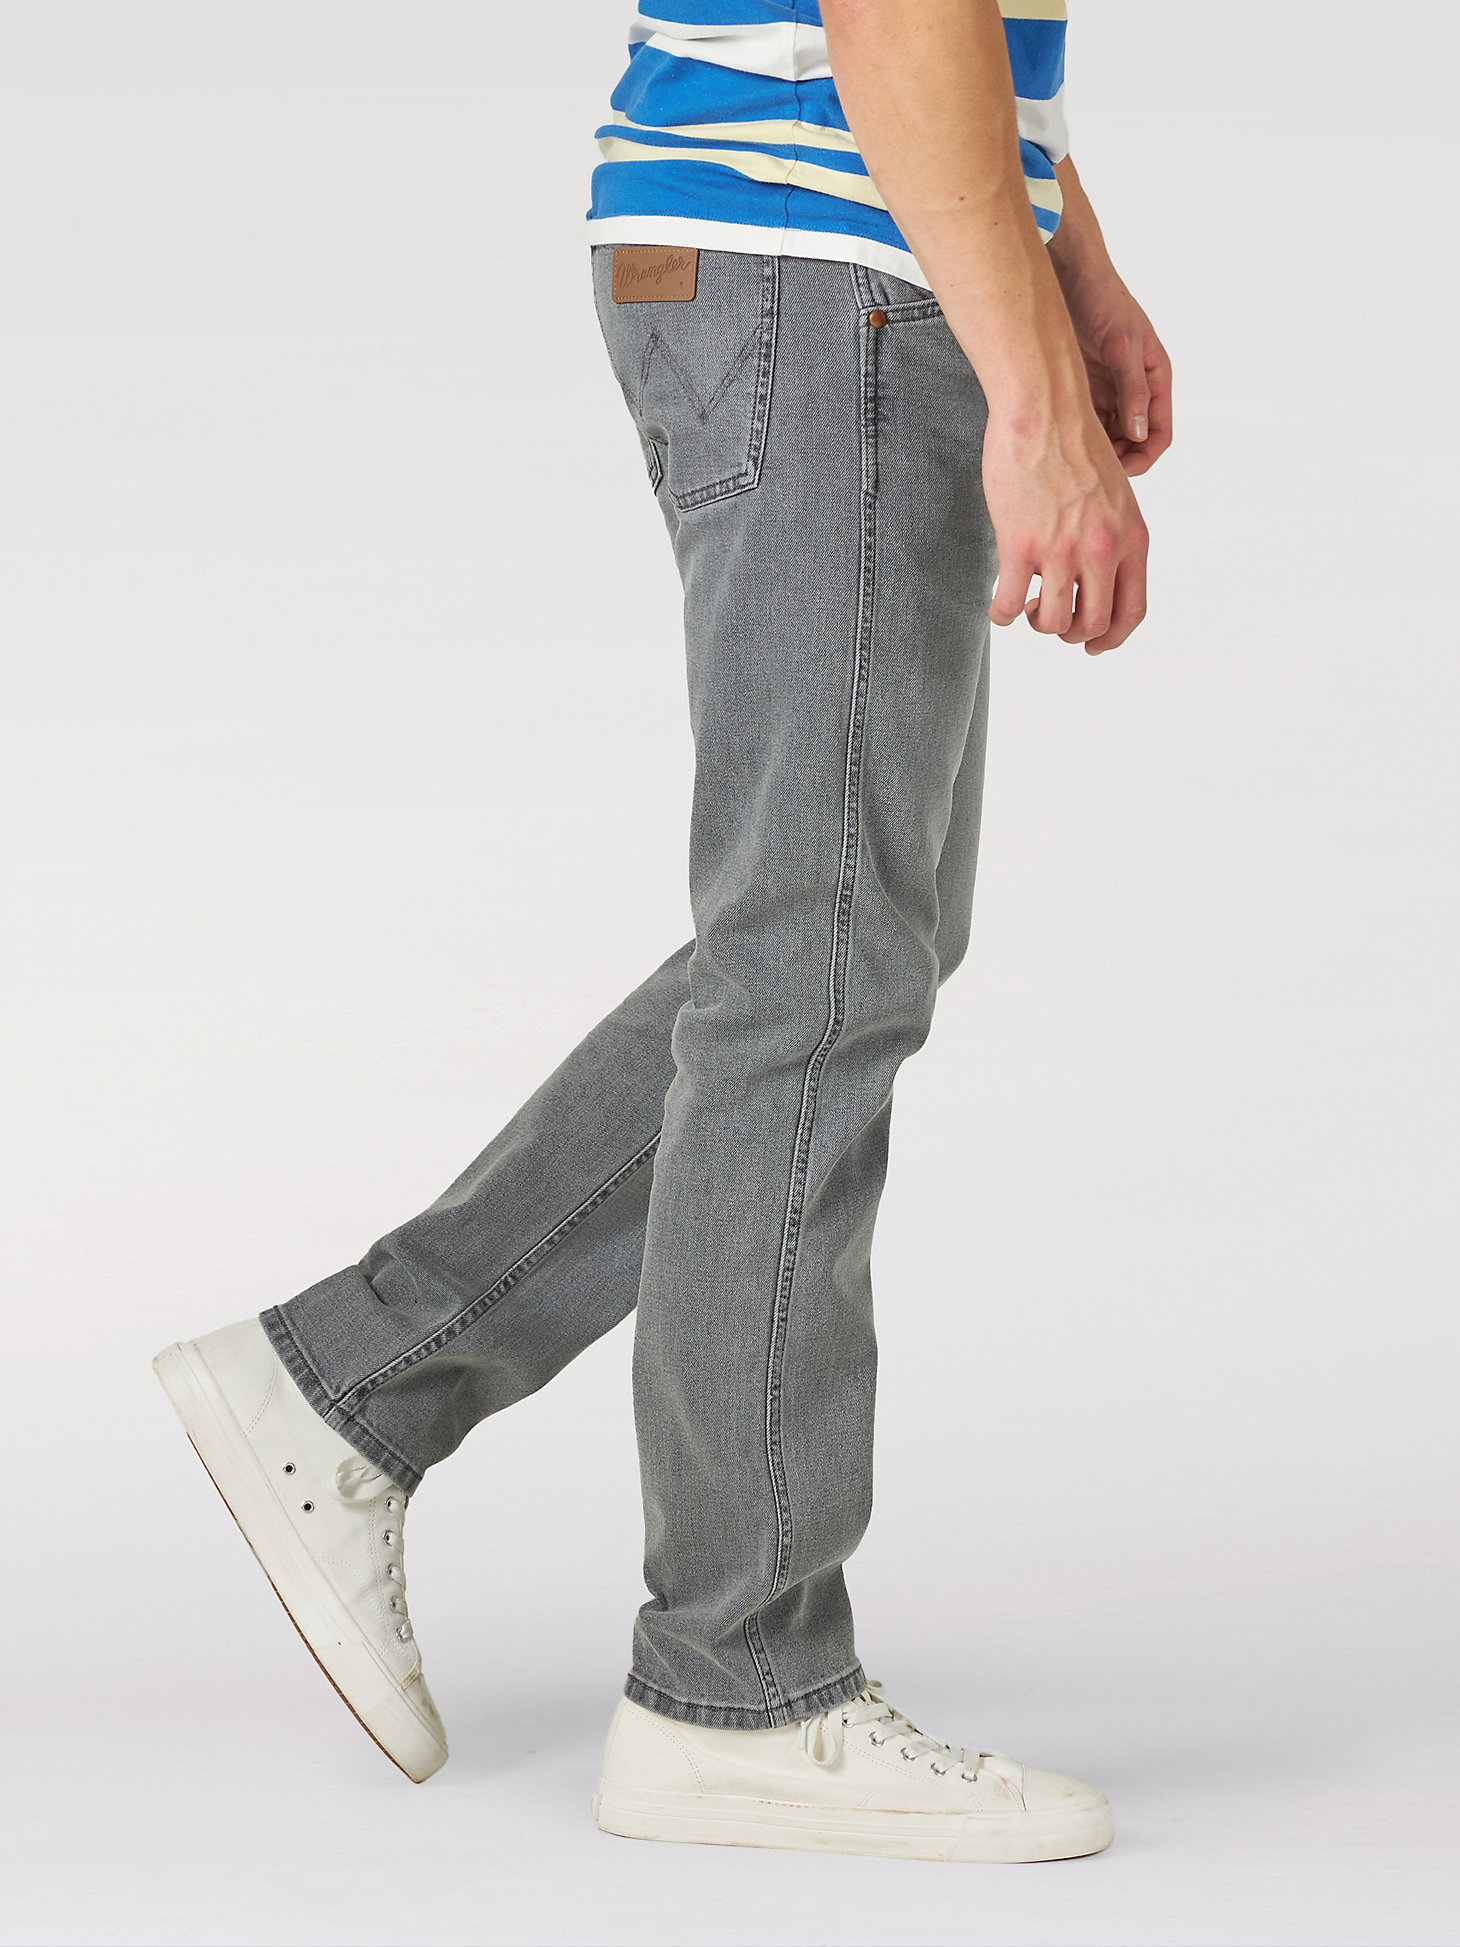 Wrangler ICONS™ 11MWZ Men's Slim Jean in Golden Grey alternative view 3